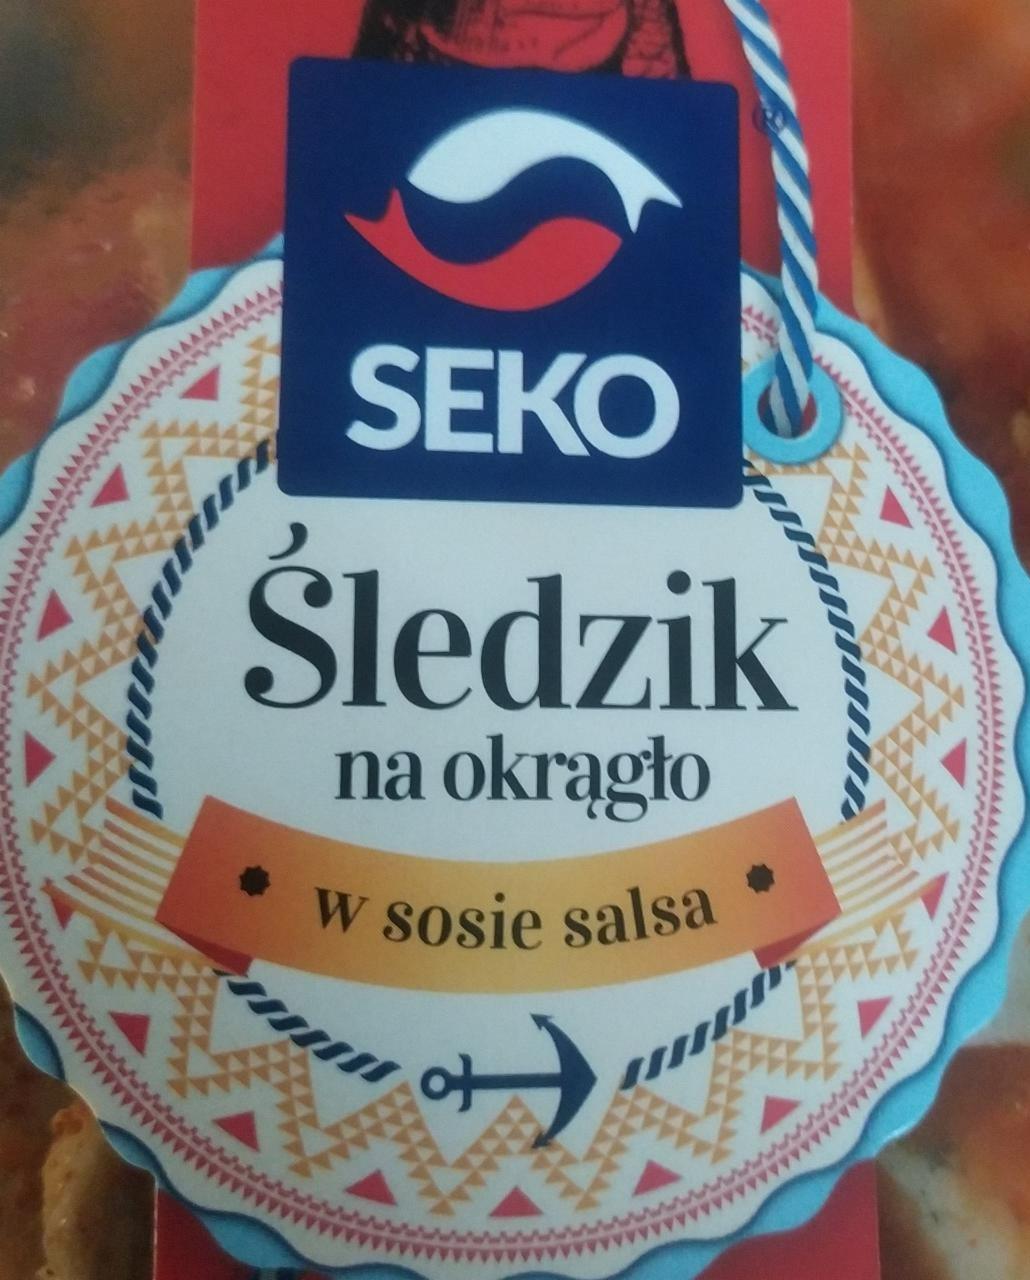 Fotografie - Śledzik na okrągło w sosie salsa Seko